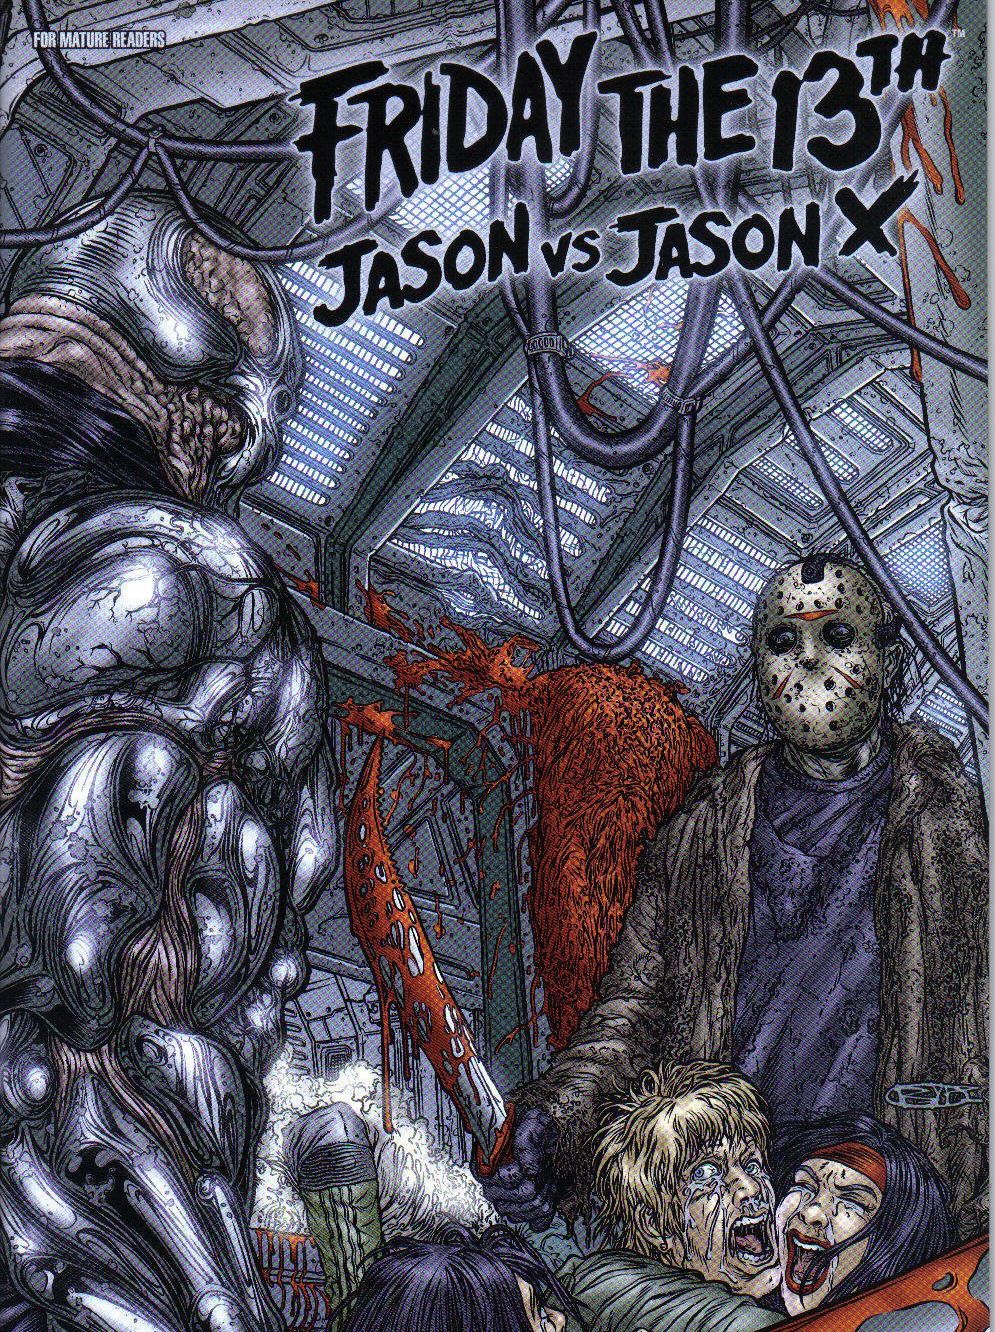 Friday the 13th Jason vs. Jason X Issue 1